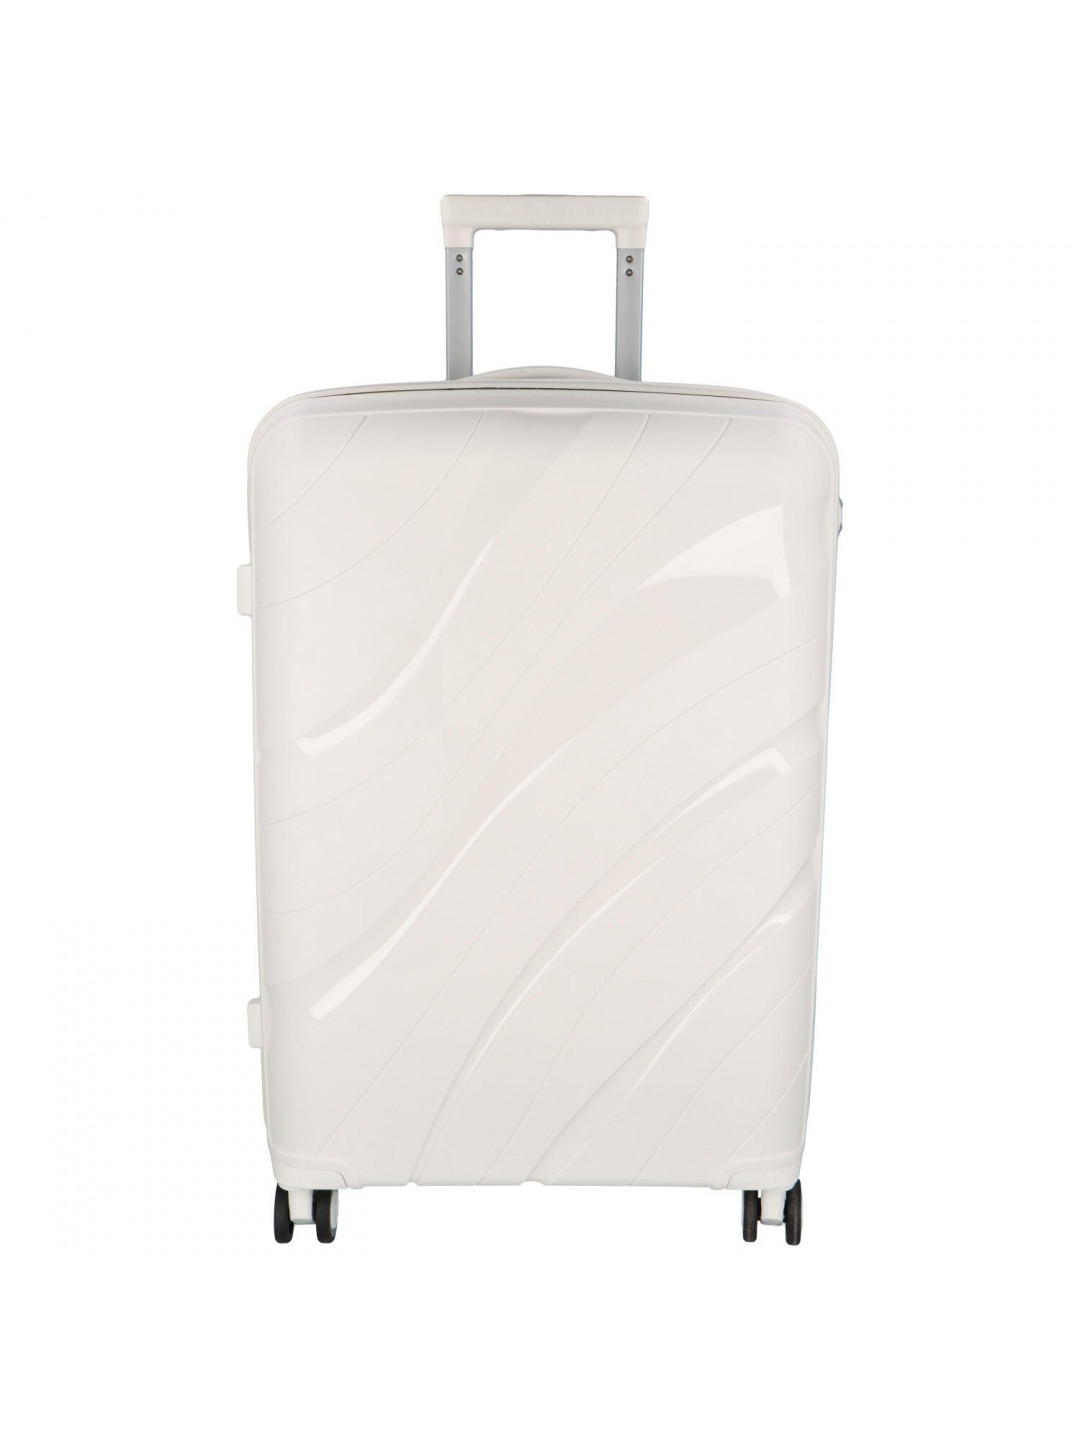 Cestovní plastový kufr Voyex velikosti M bílý